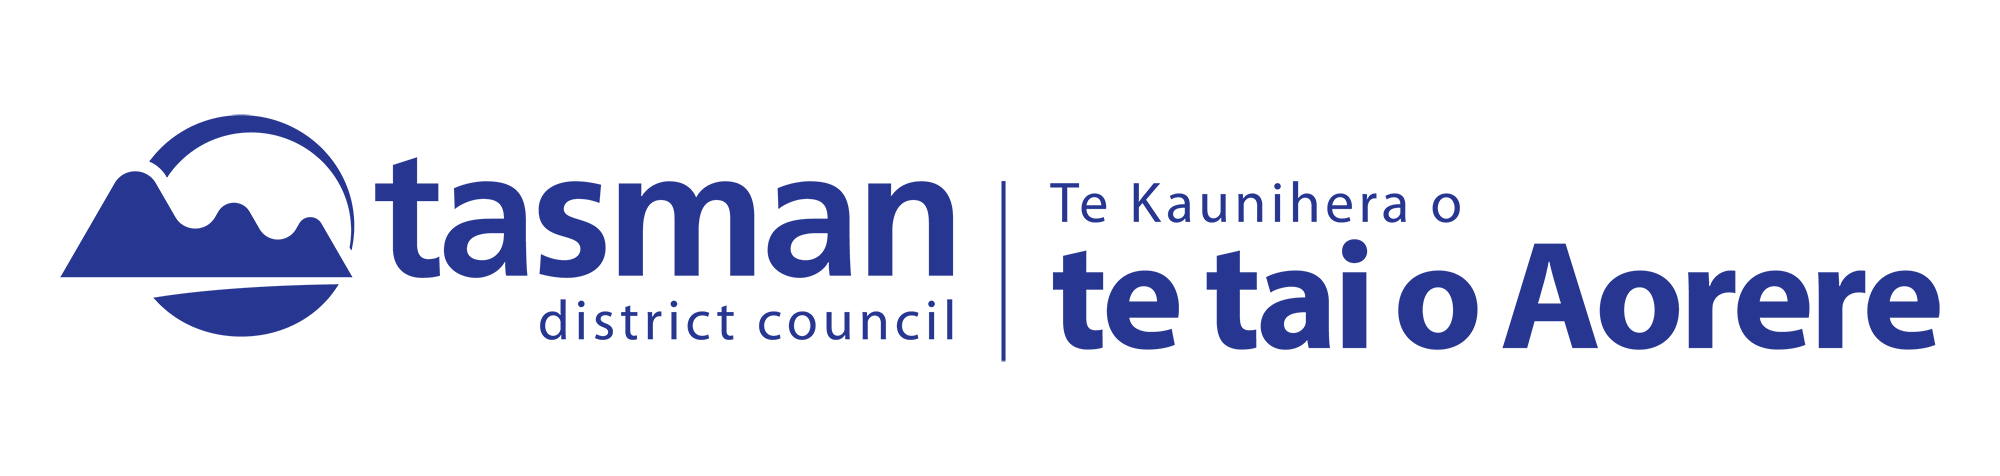 Tasman District Council logo